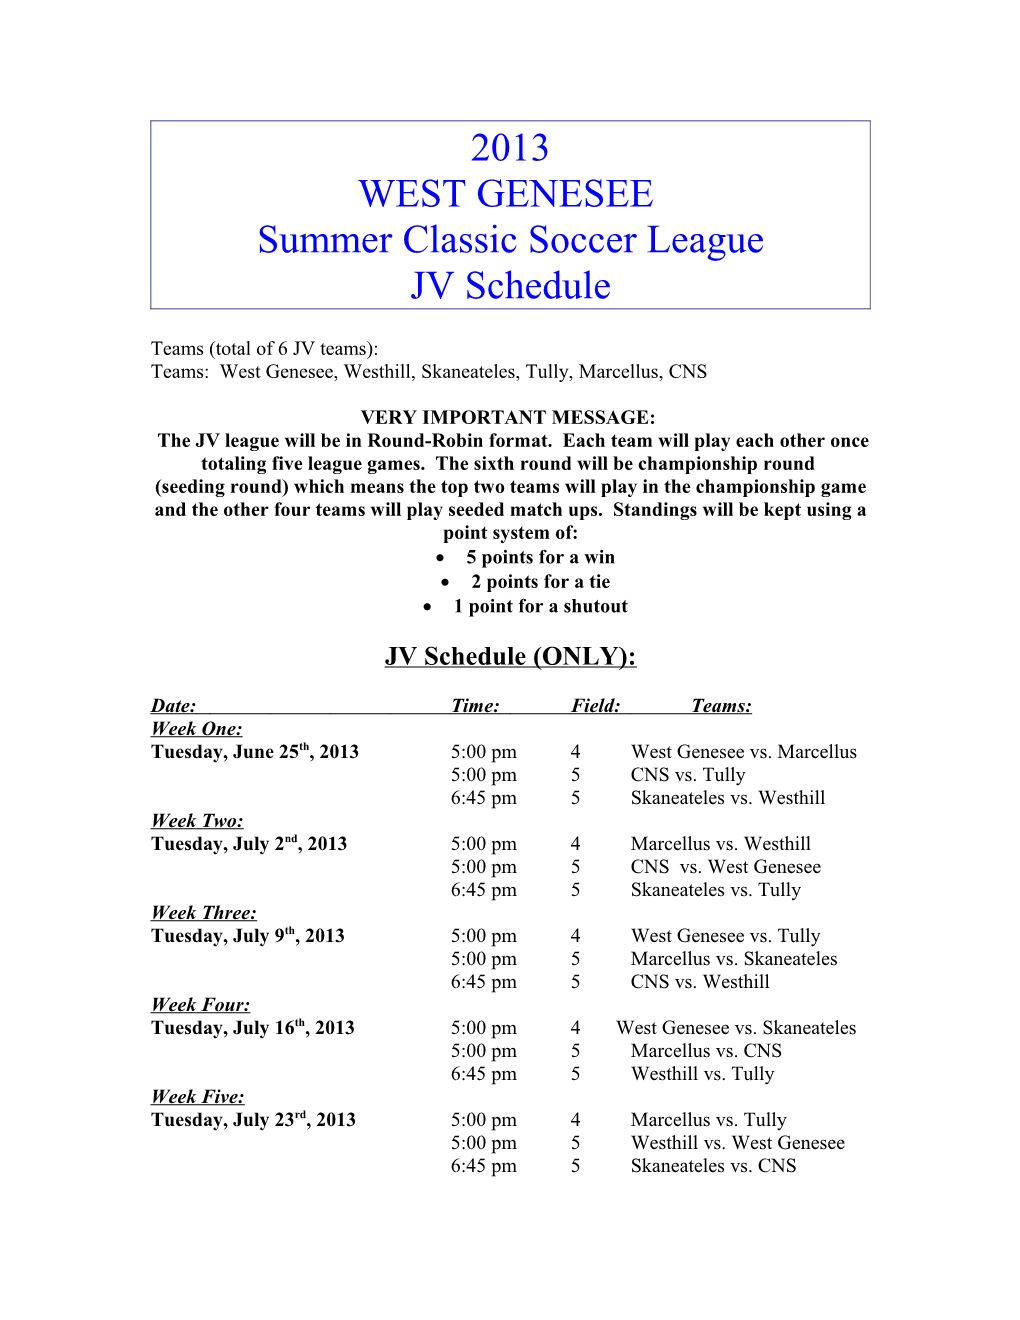 West Genesee High School